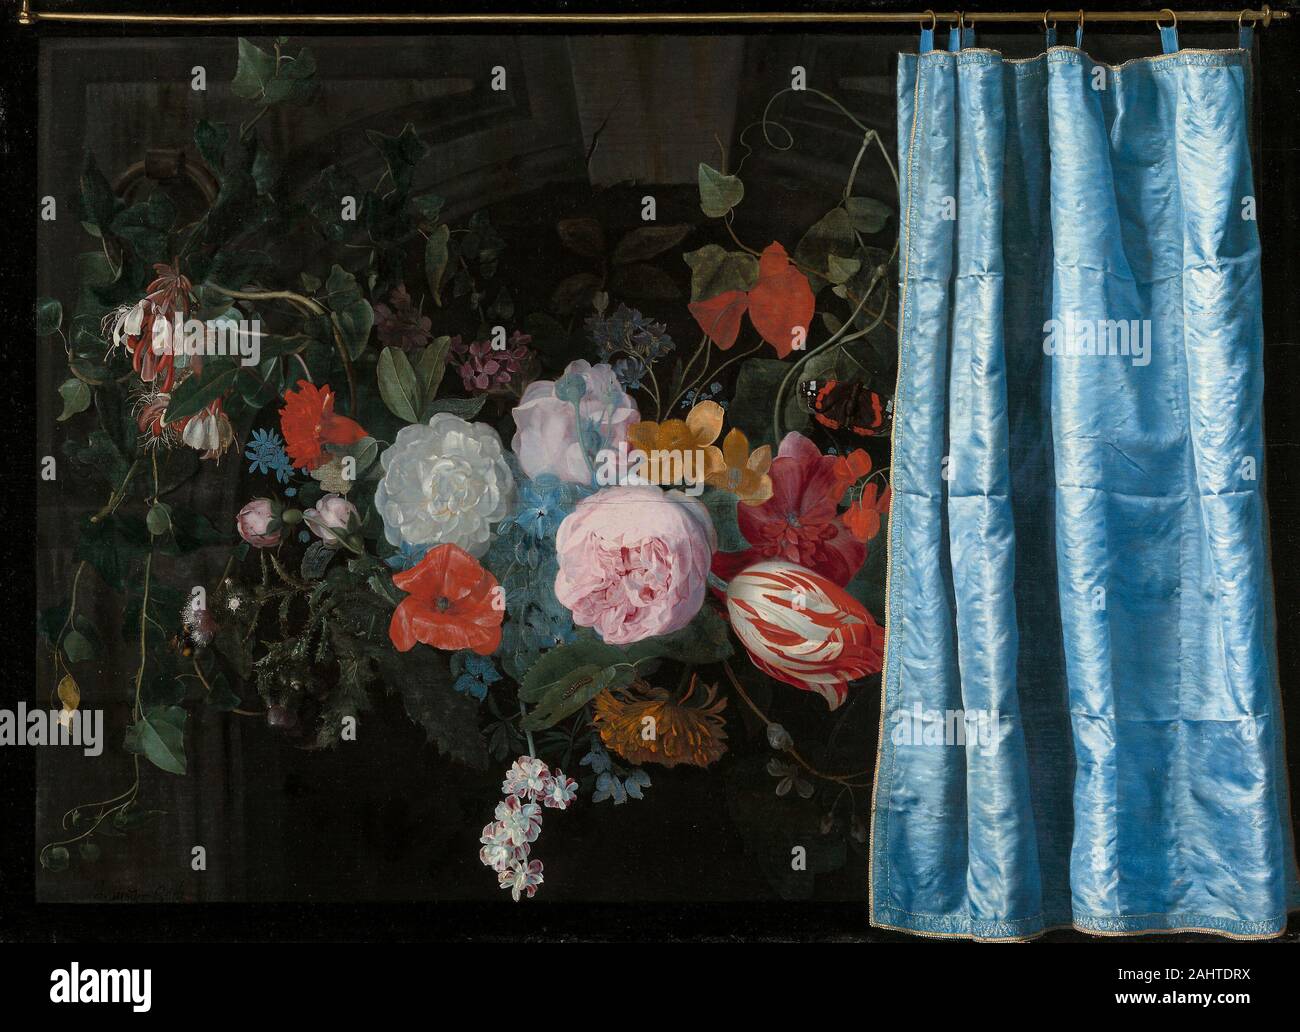 Adriaen van der l'épeautre. En trompe-l'Oeil Nature morte avec une guirlande de fleurs et un rideau. 1658. Aux Pays-Bas. Huile sur panneau Banque D'Images